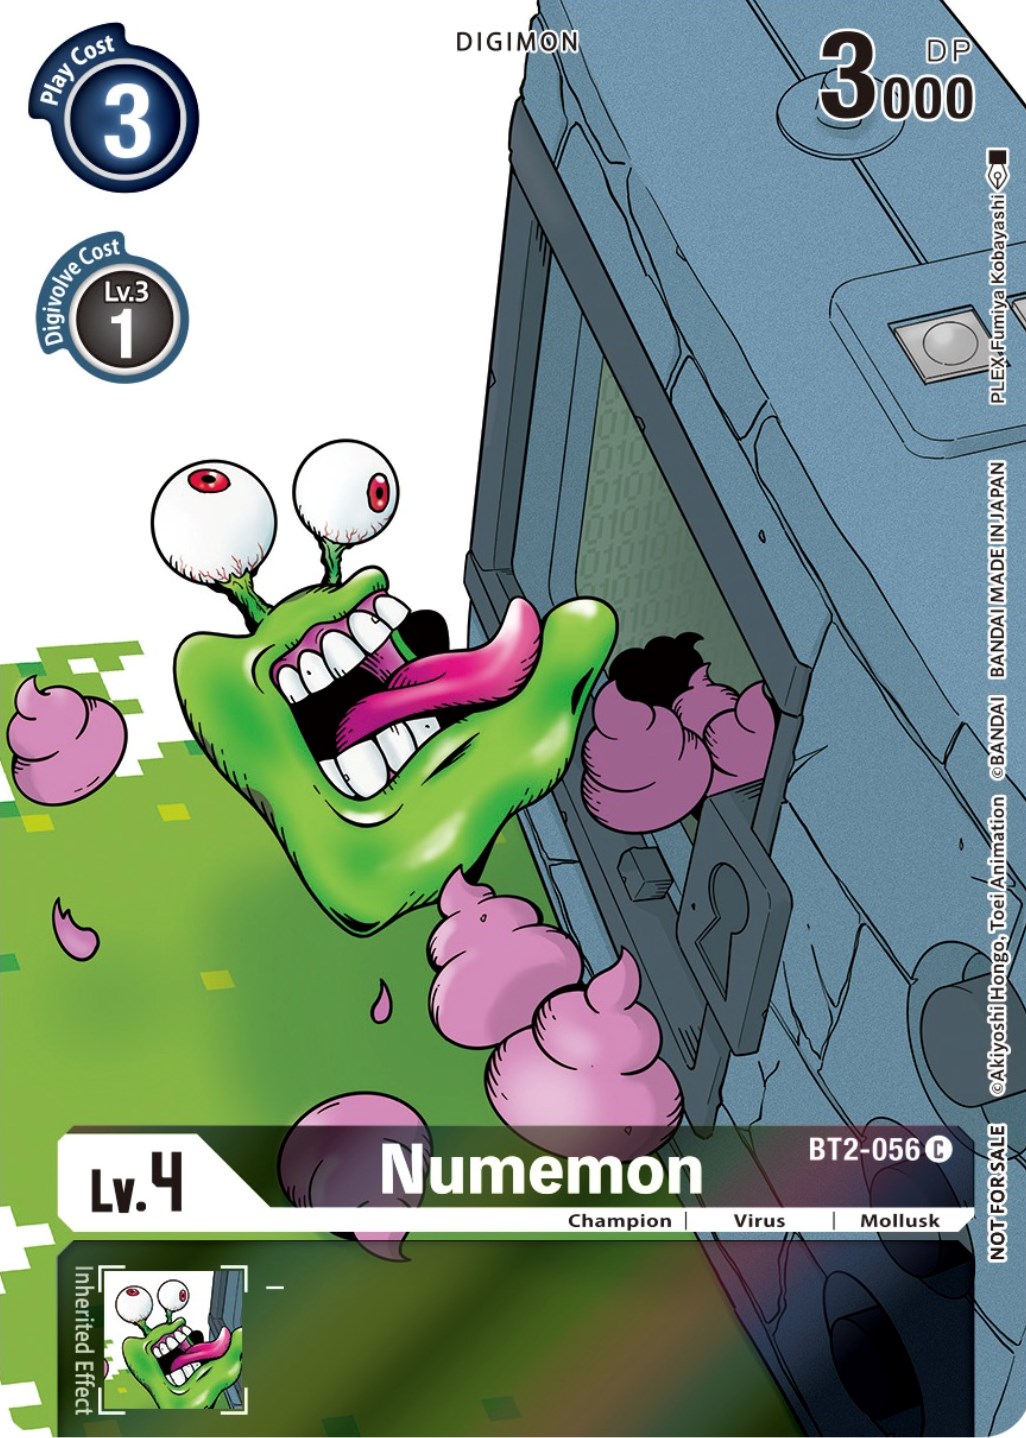 Numemon